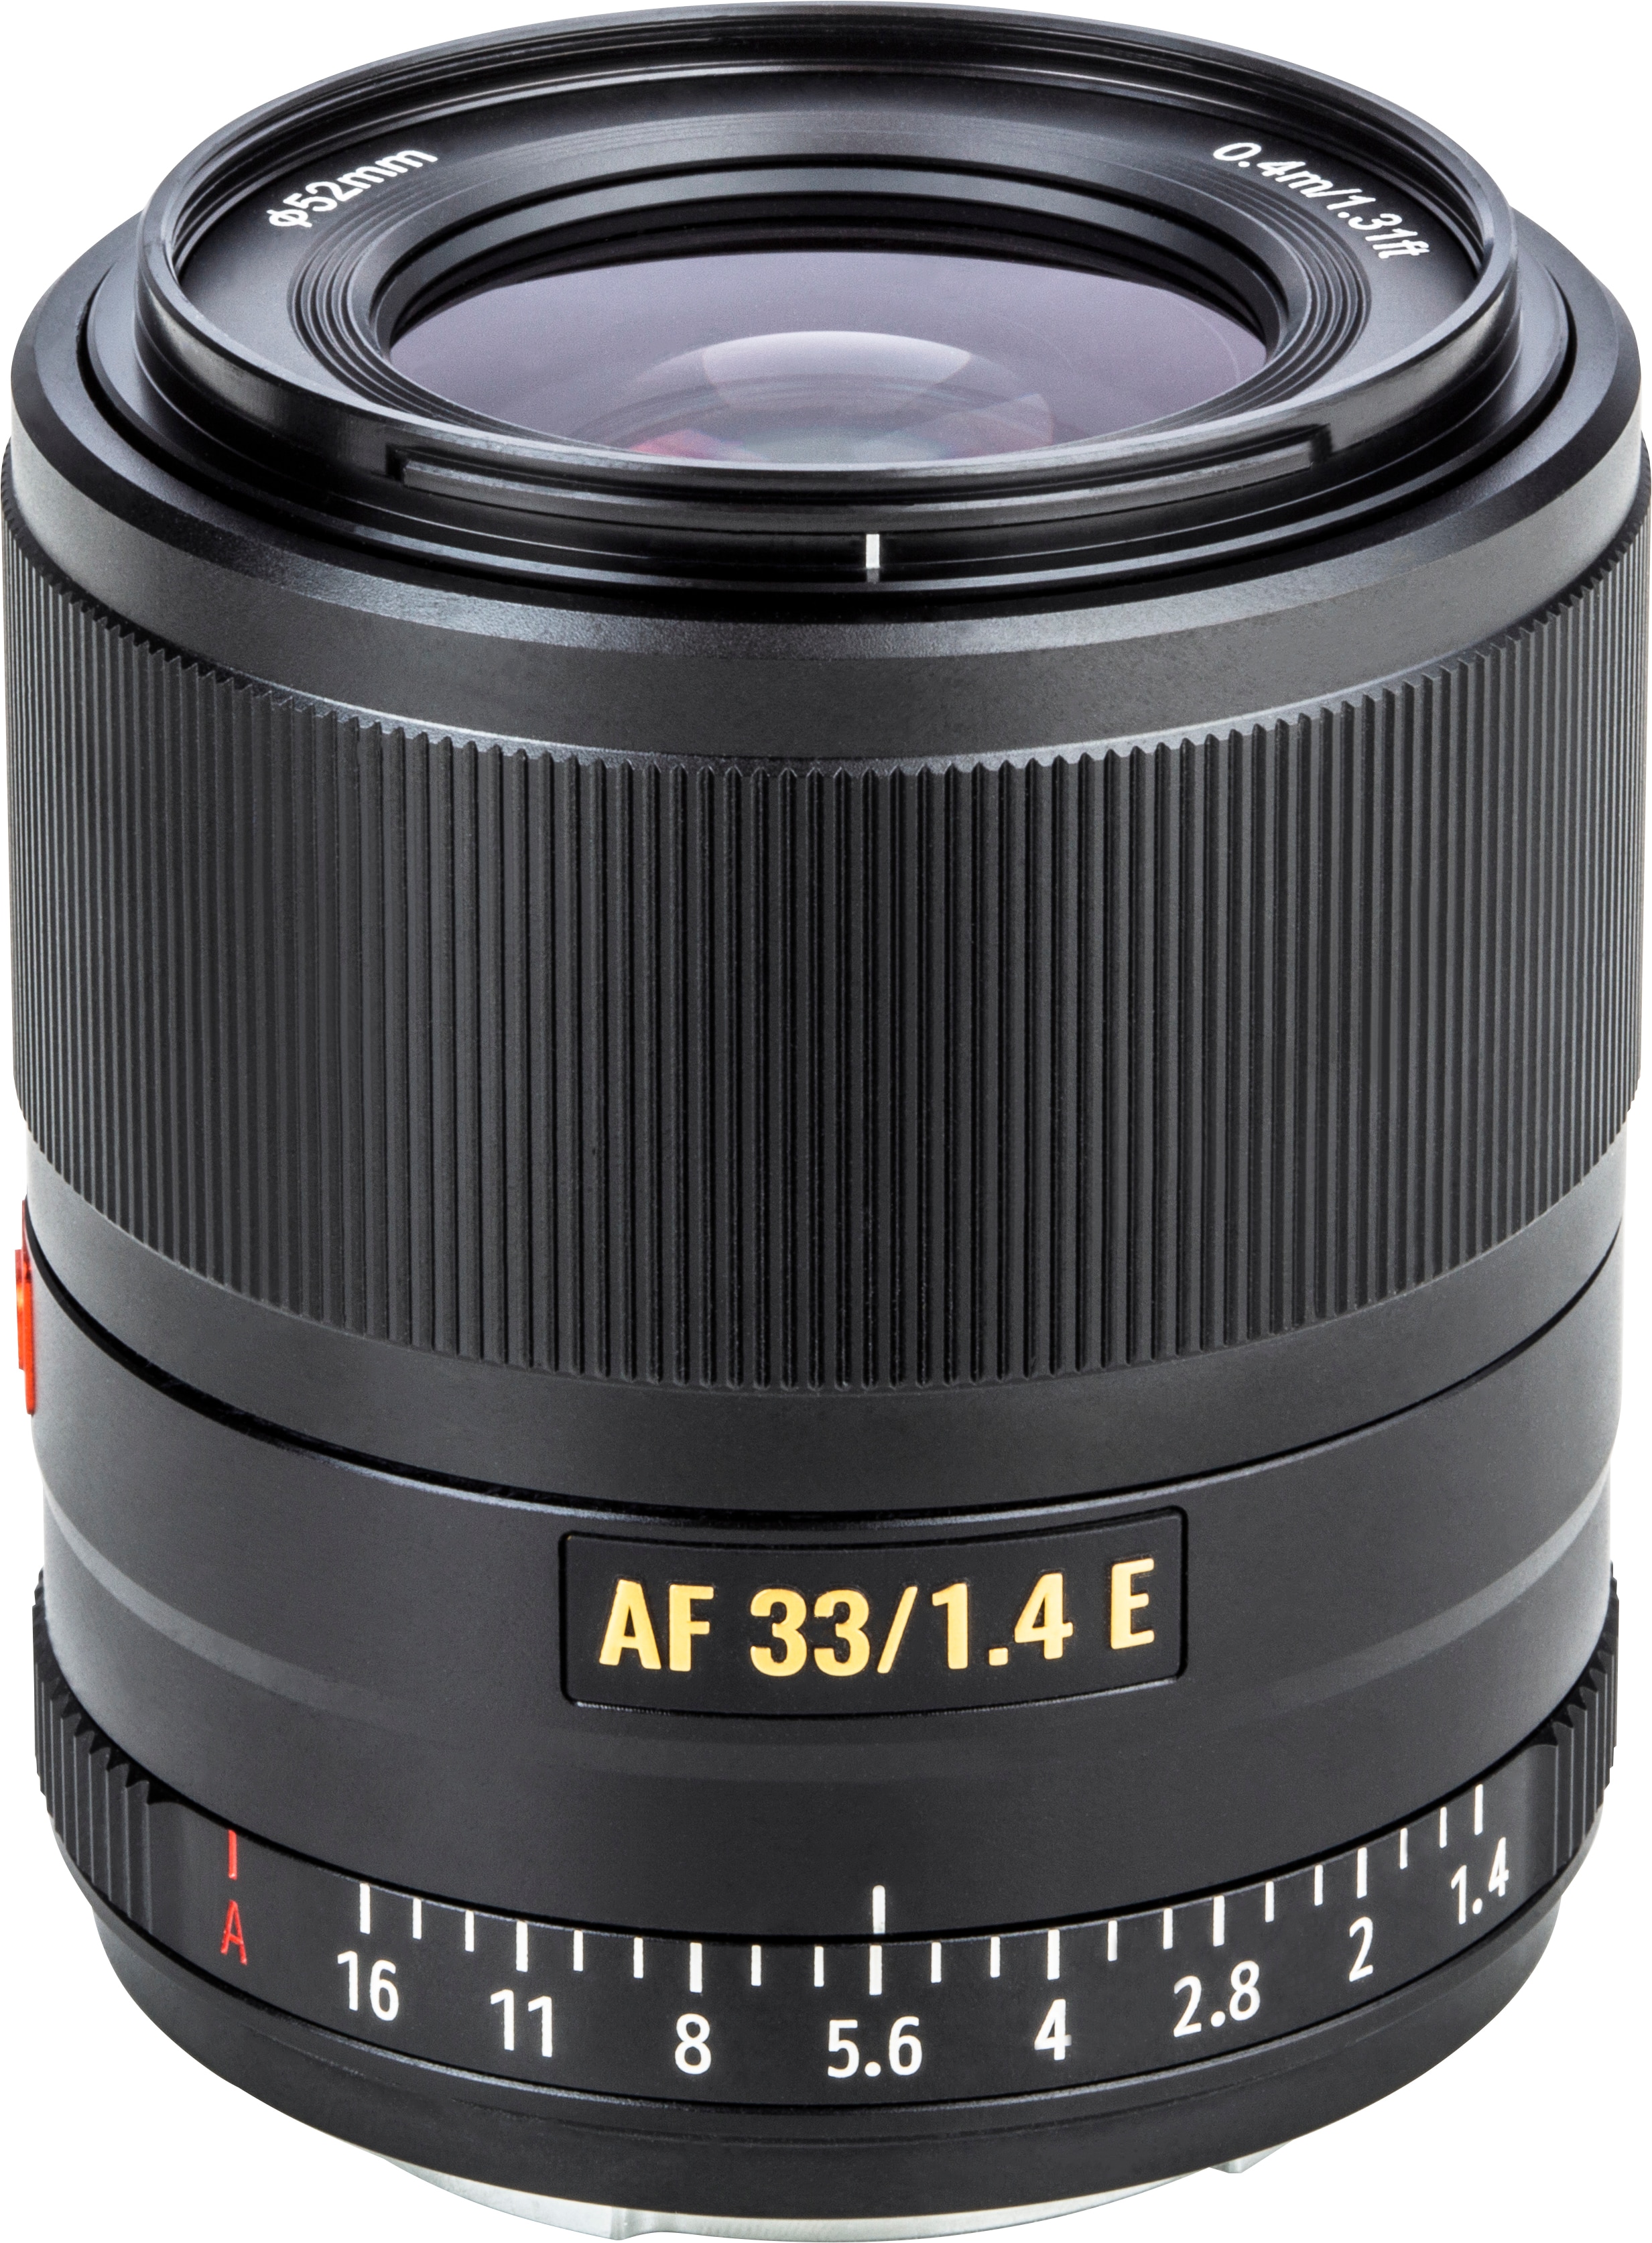 Viltrox Viltrox FE-33MM STM APS-C auto focus prime lens with large aperture for Sony E mount 33mm/f1.4 (Sony E APS-C / DX) Galaxus